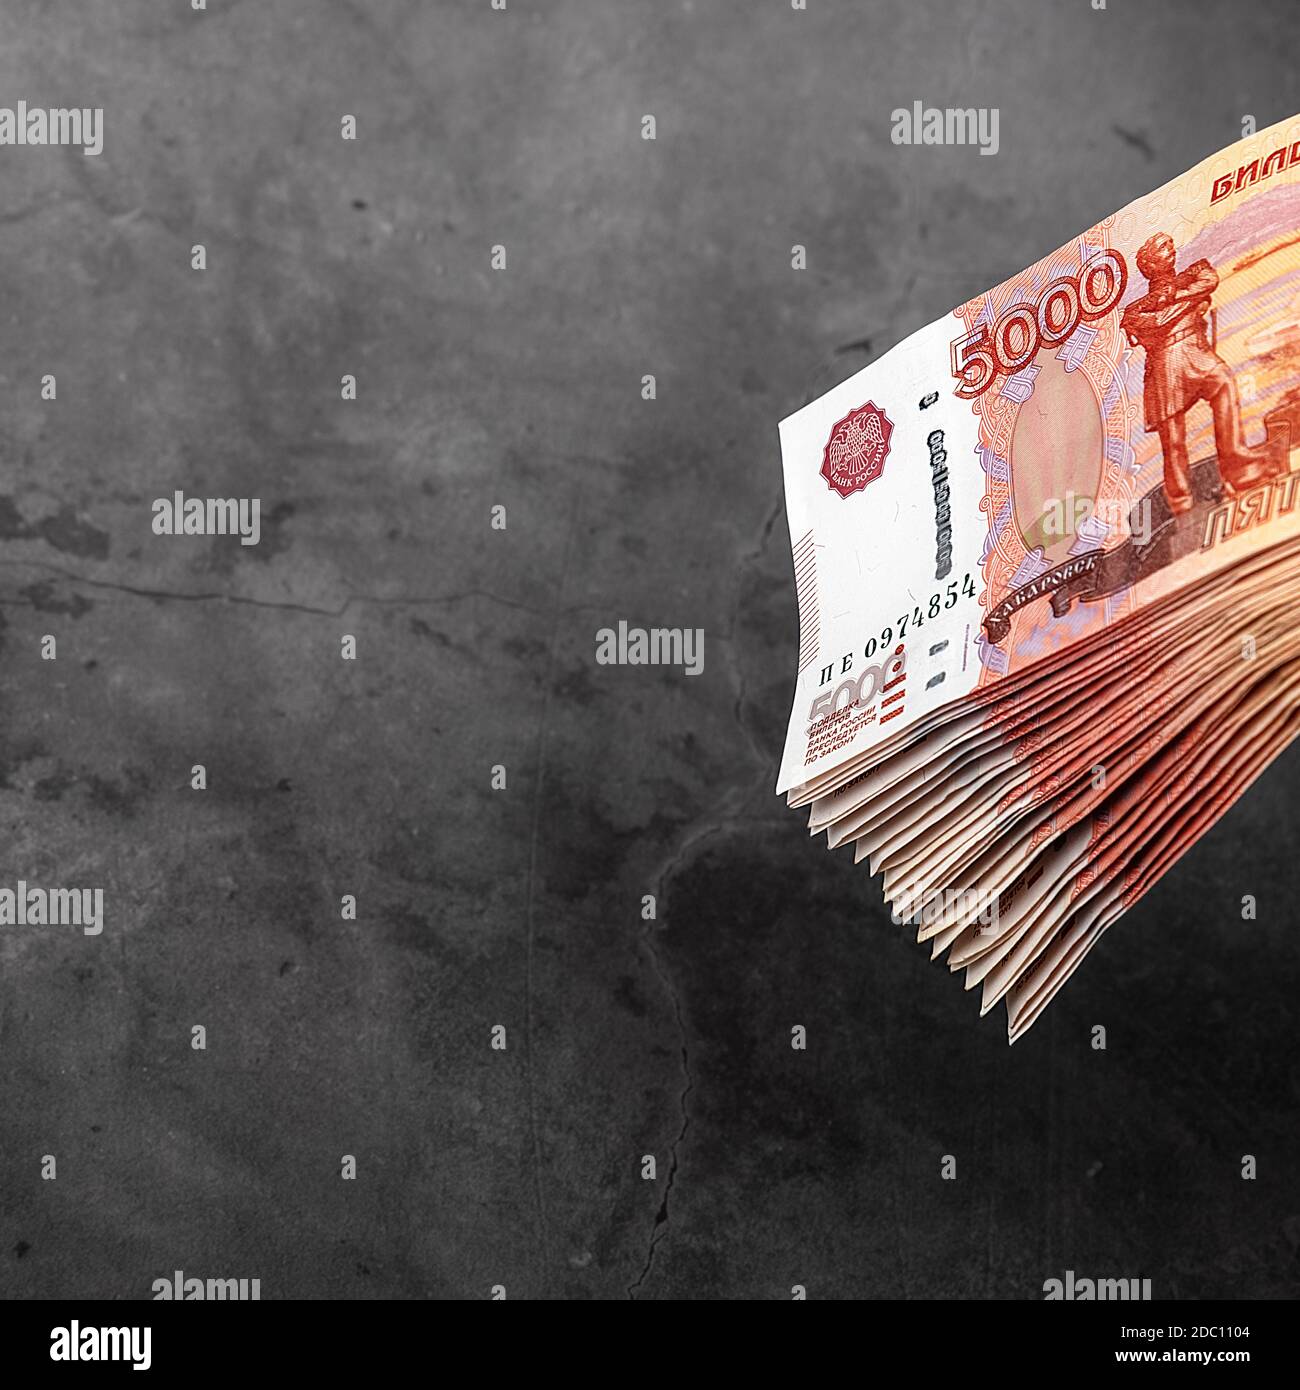 Billets en espèces russes de cinq mille roubles, le paquet est suspendu sur fond gris, il y a un lieu pour l'inscription et le texte. Mise en page, maquette. Banque D'Images